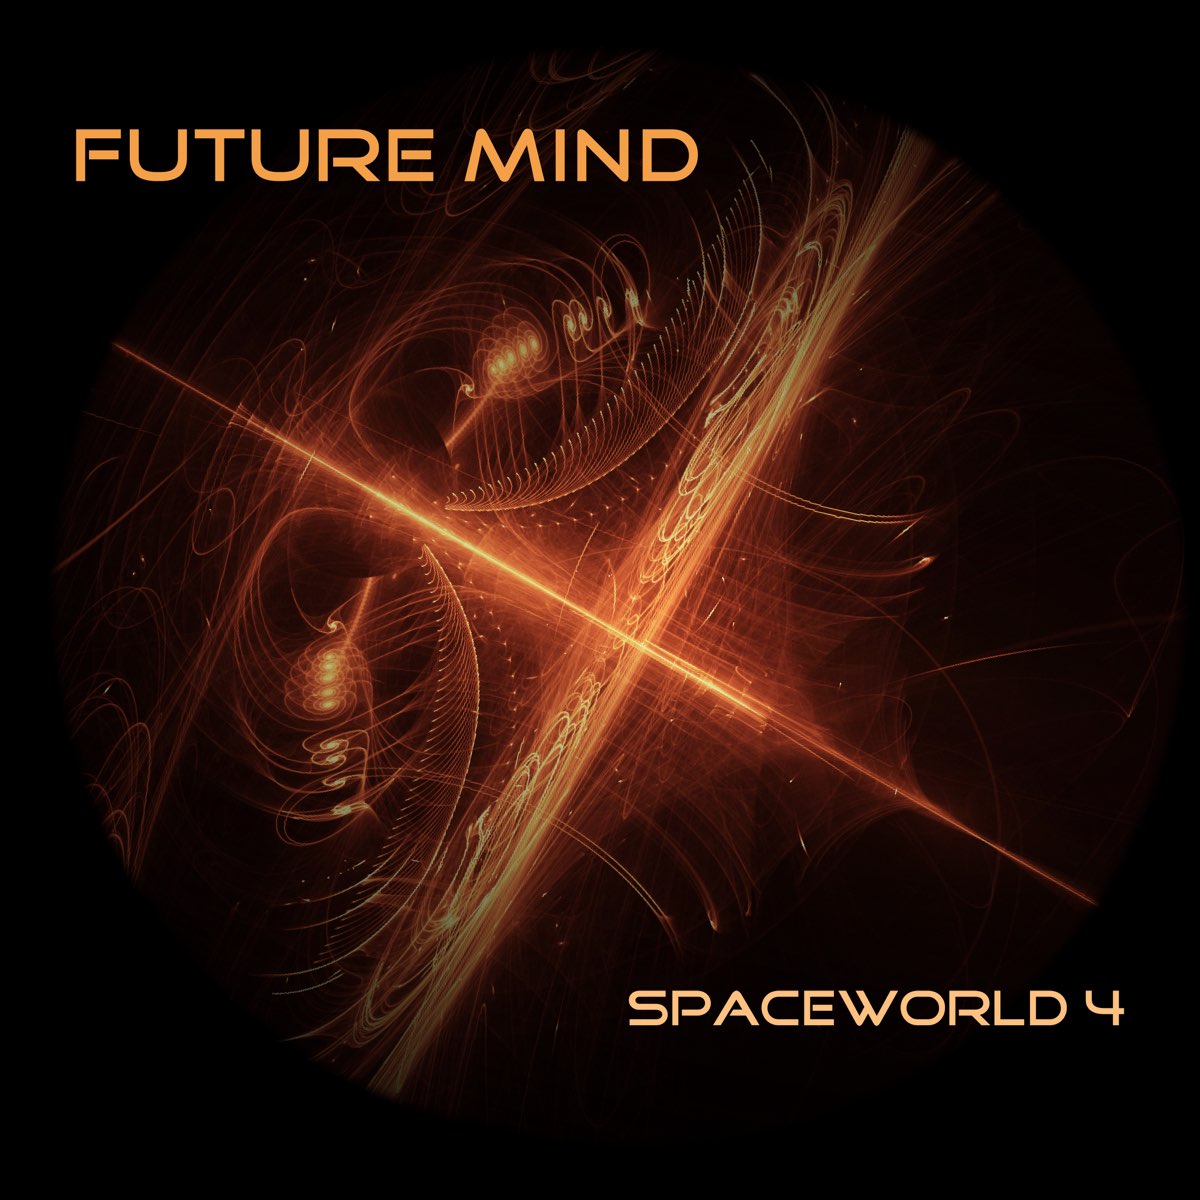 Future magic. The Future of the Mind. Spaceworld ’95. Phigros Future Mind. Believer Future Mind.